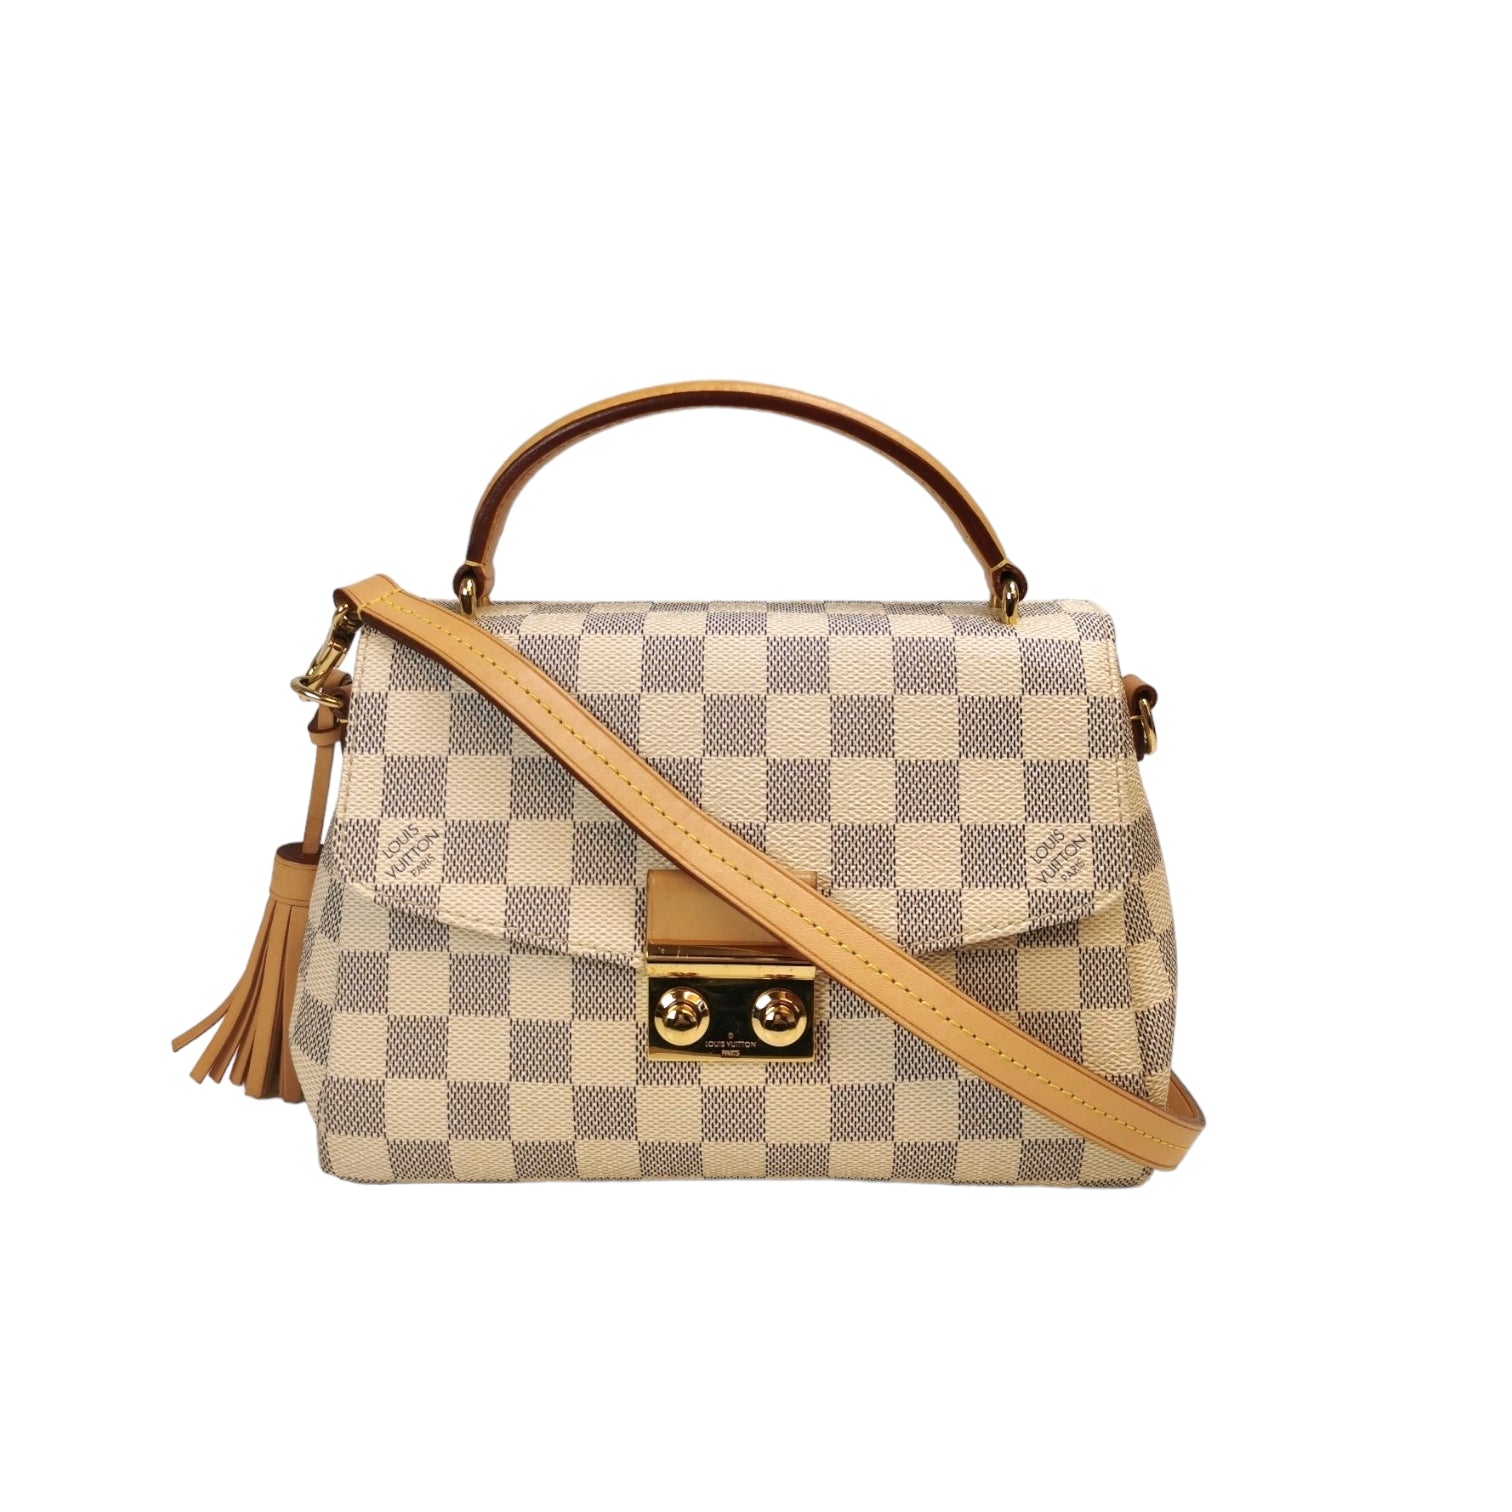 Louis Vuitton Croisette Damier Azur Canvas Top Handle Bag on SALE